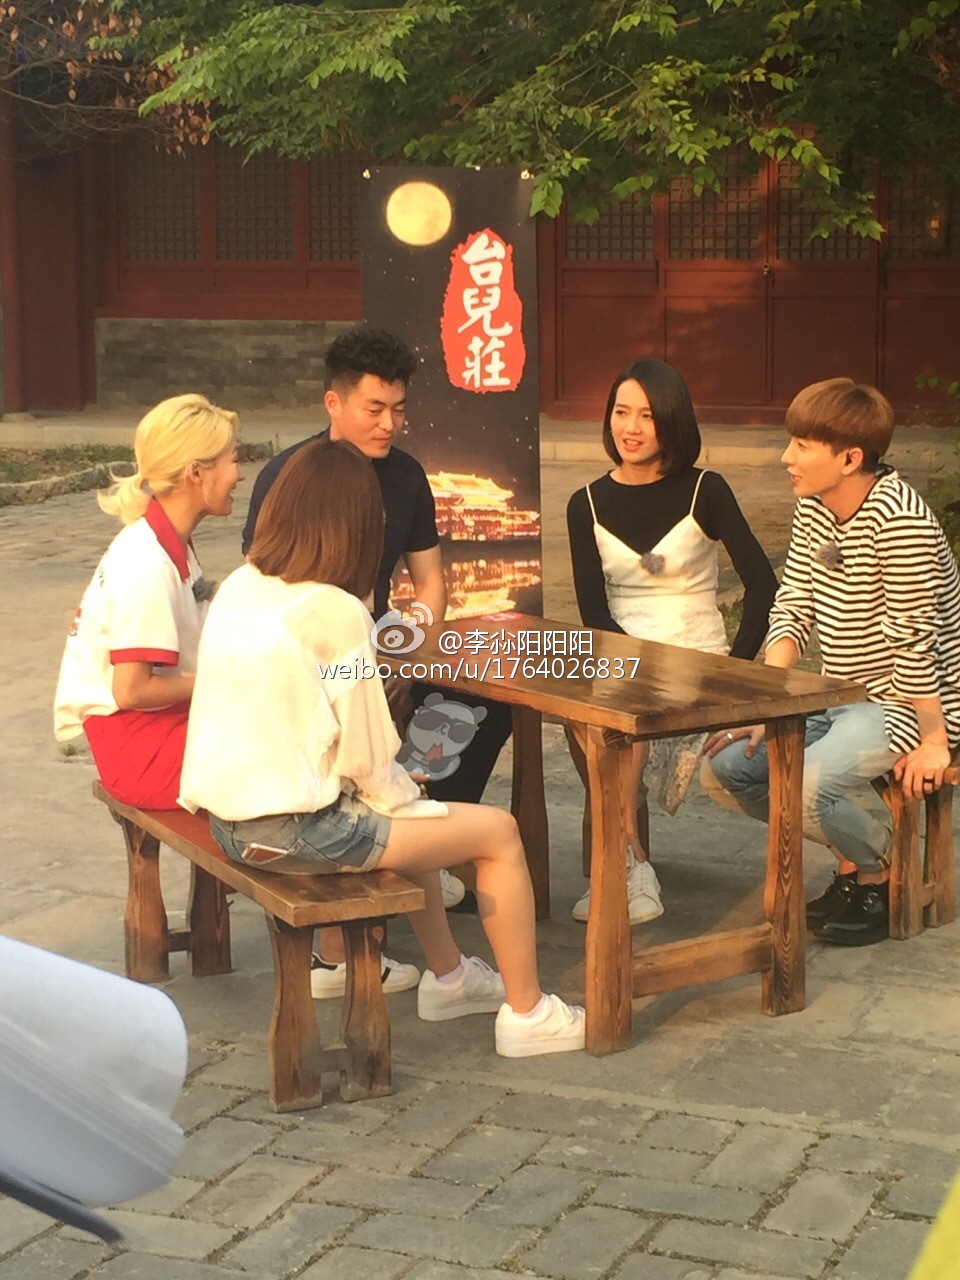 [PIC][23-05-2016]Sunny và HyoYeon khởi hành đi Trung Quốc để ghi hình cho chương trình '스타강림/Star Descent' vào tối nay 6924e9d5jw1f48gzm4kpgj20qo0zkdot